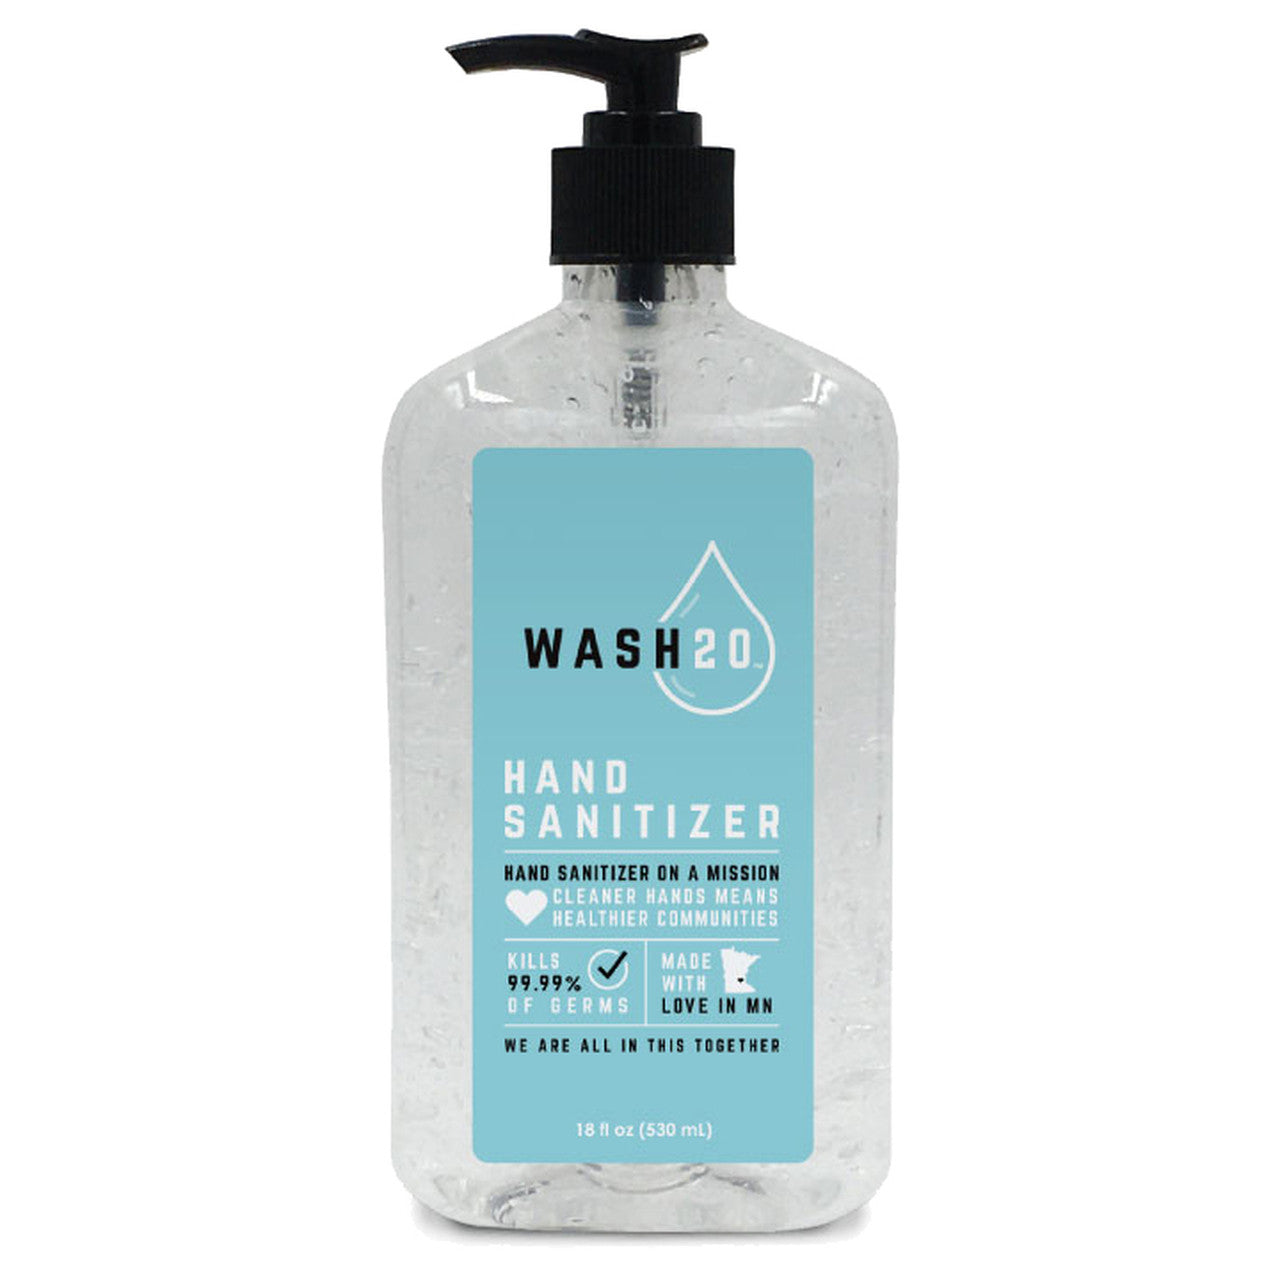 Bottle of Wash20 Hand Sanitizer